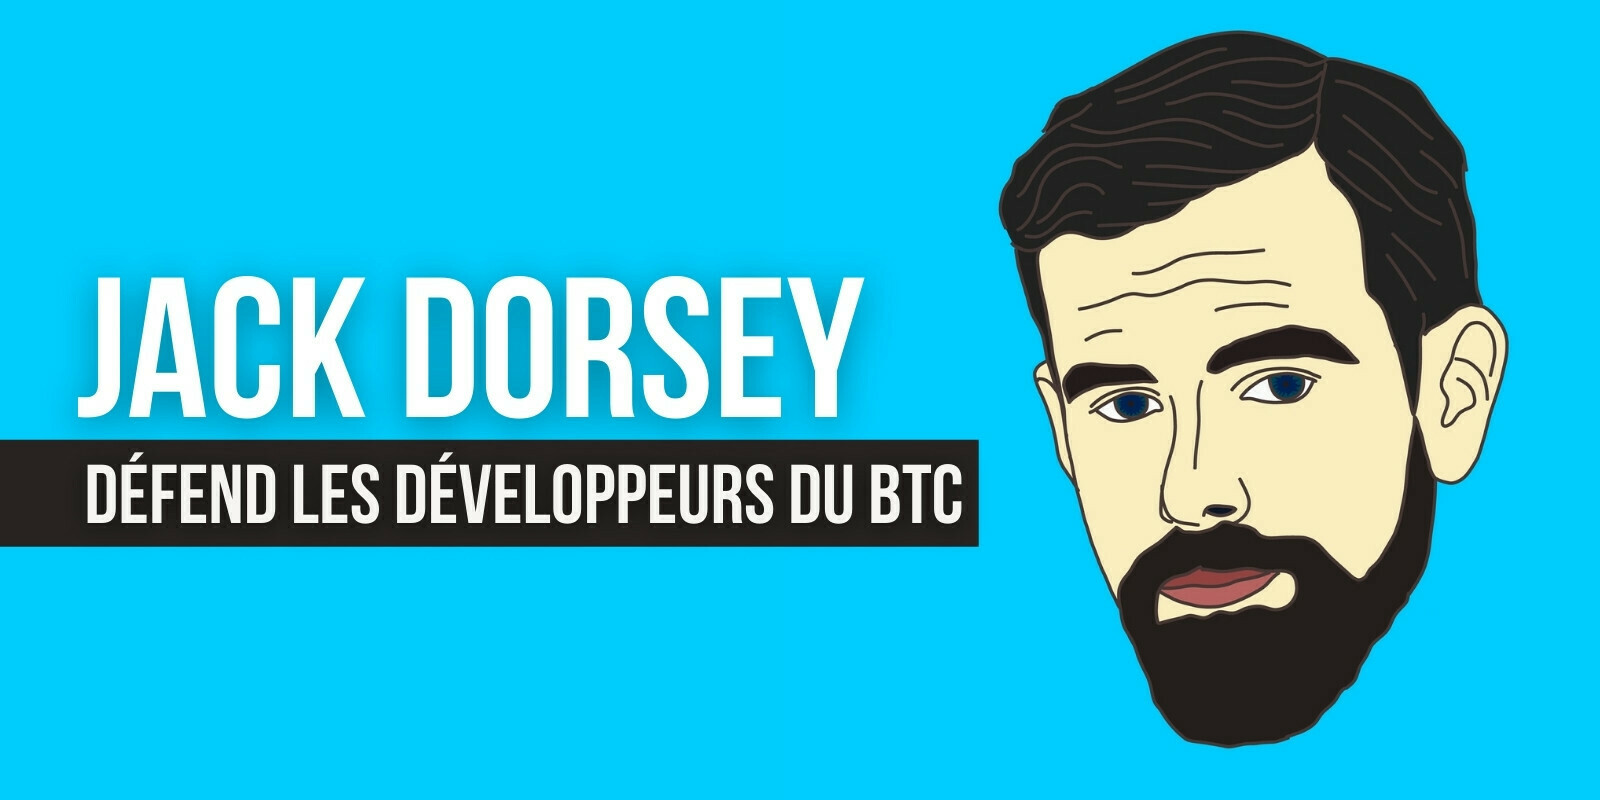 Jack Dorsey crée un fonds pour aider les développeurs de Bitcoin (BTC) à se défendre légalement